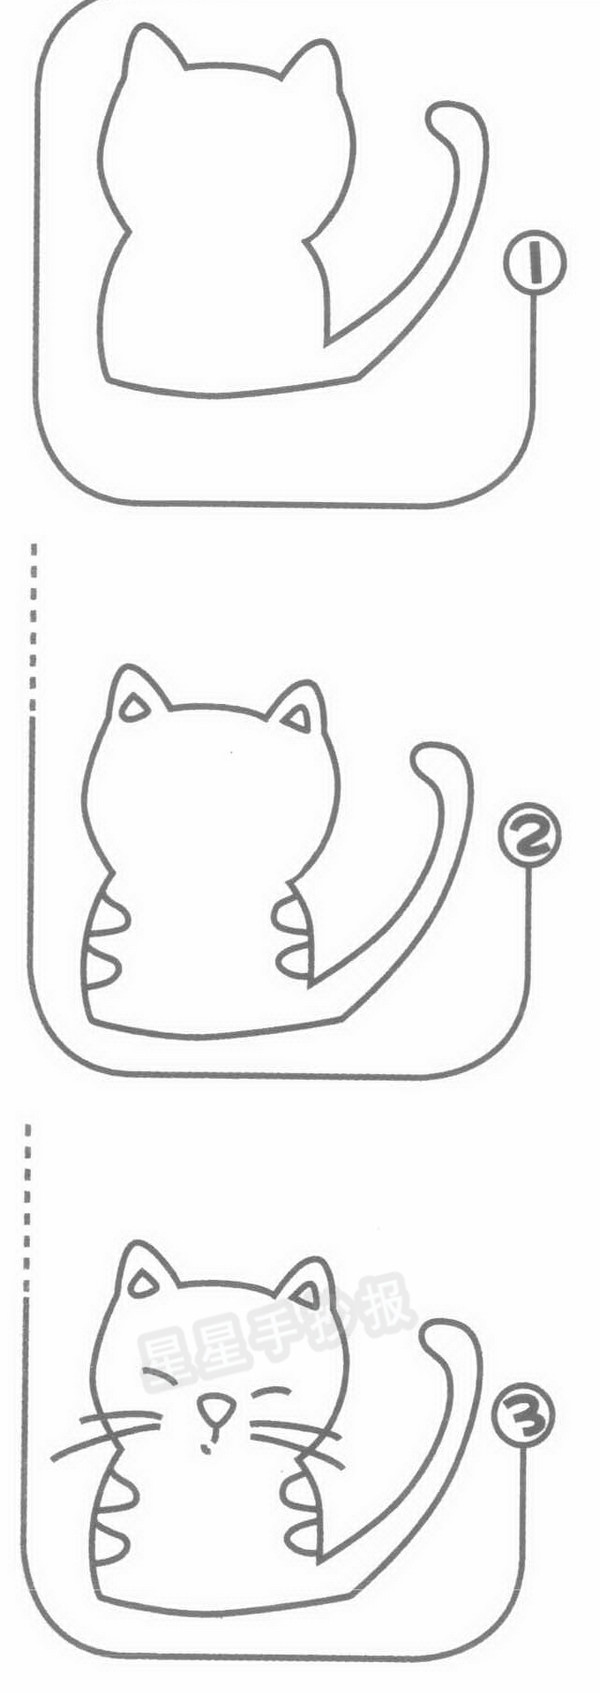 猫简笔画图片教程